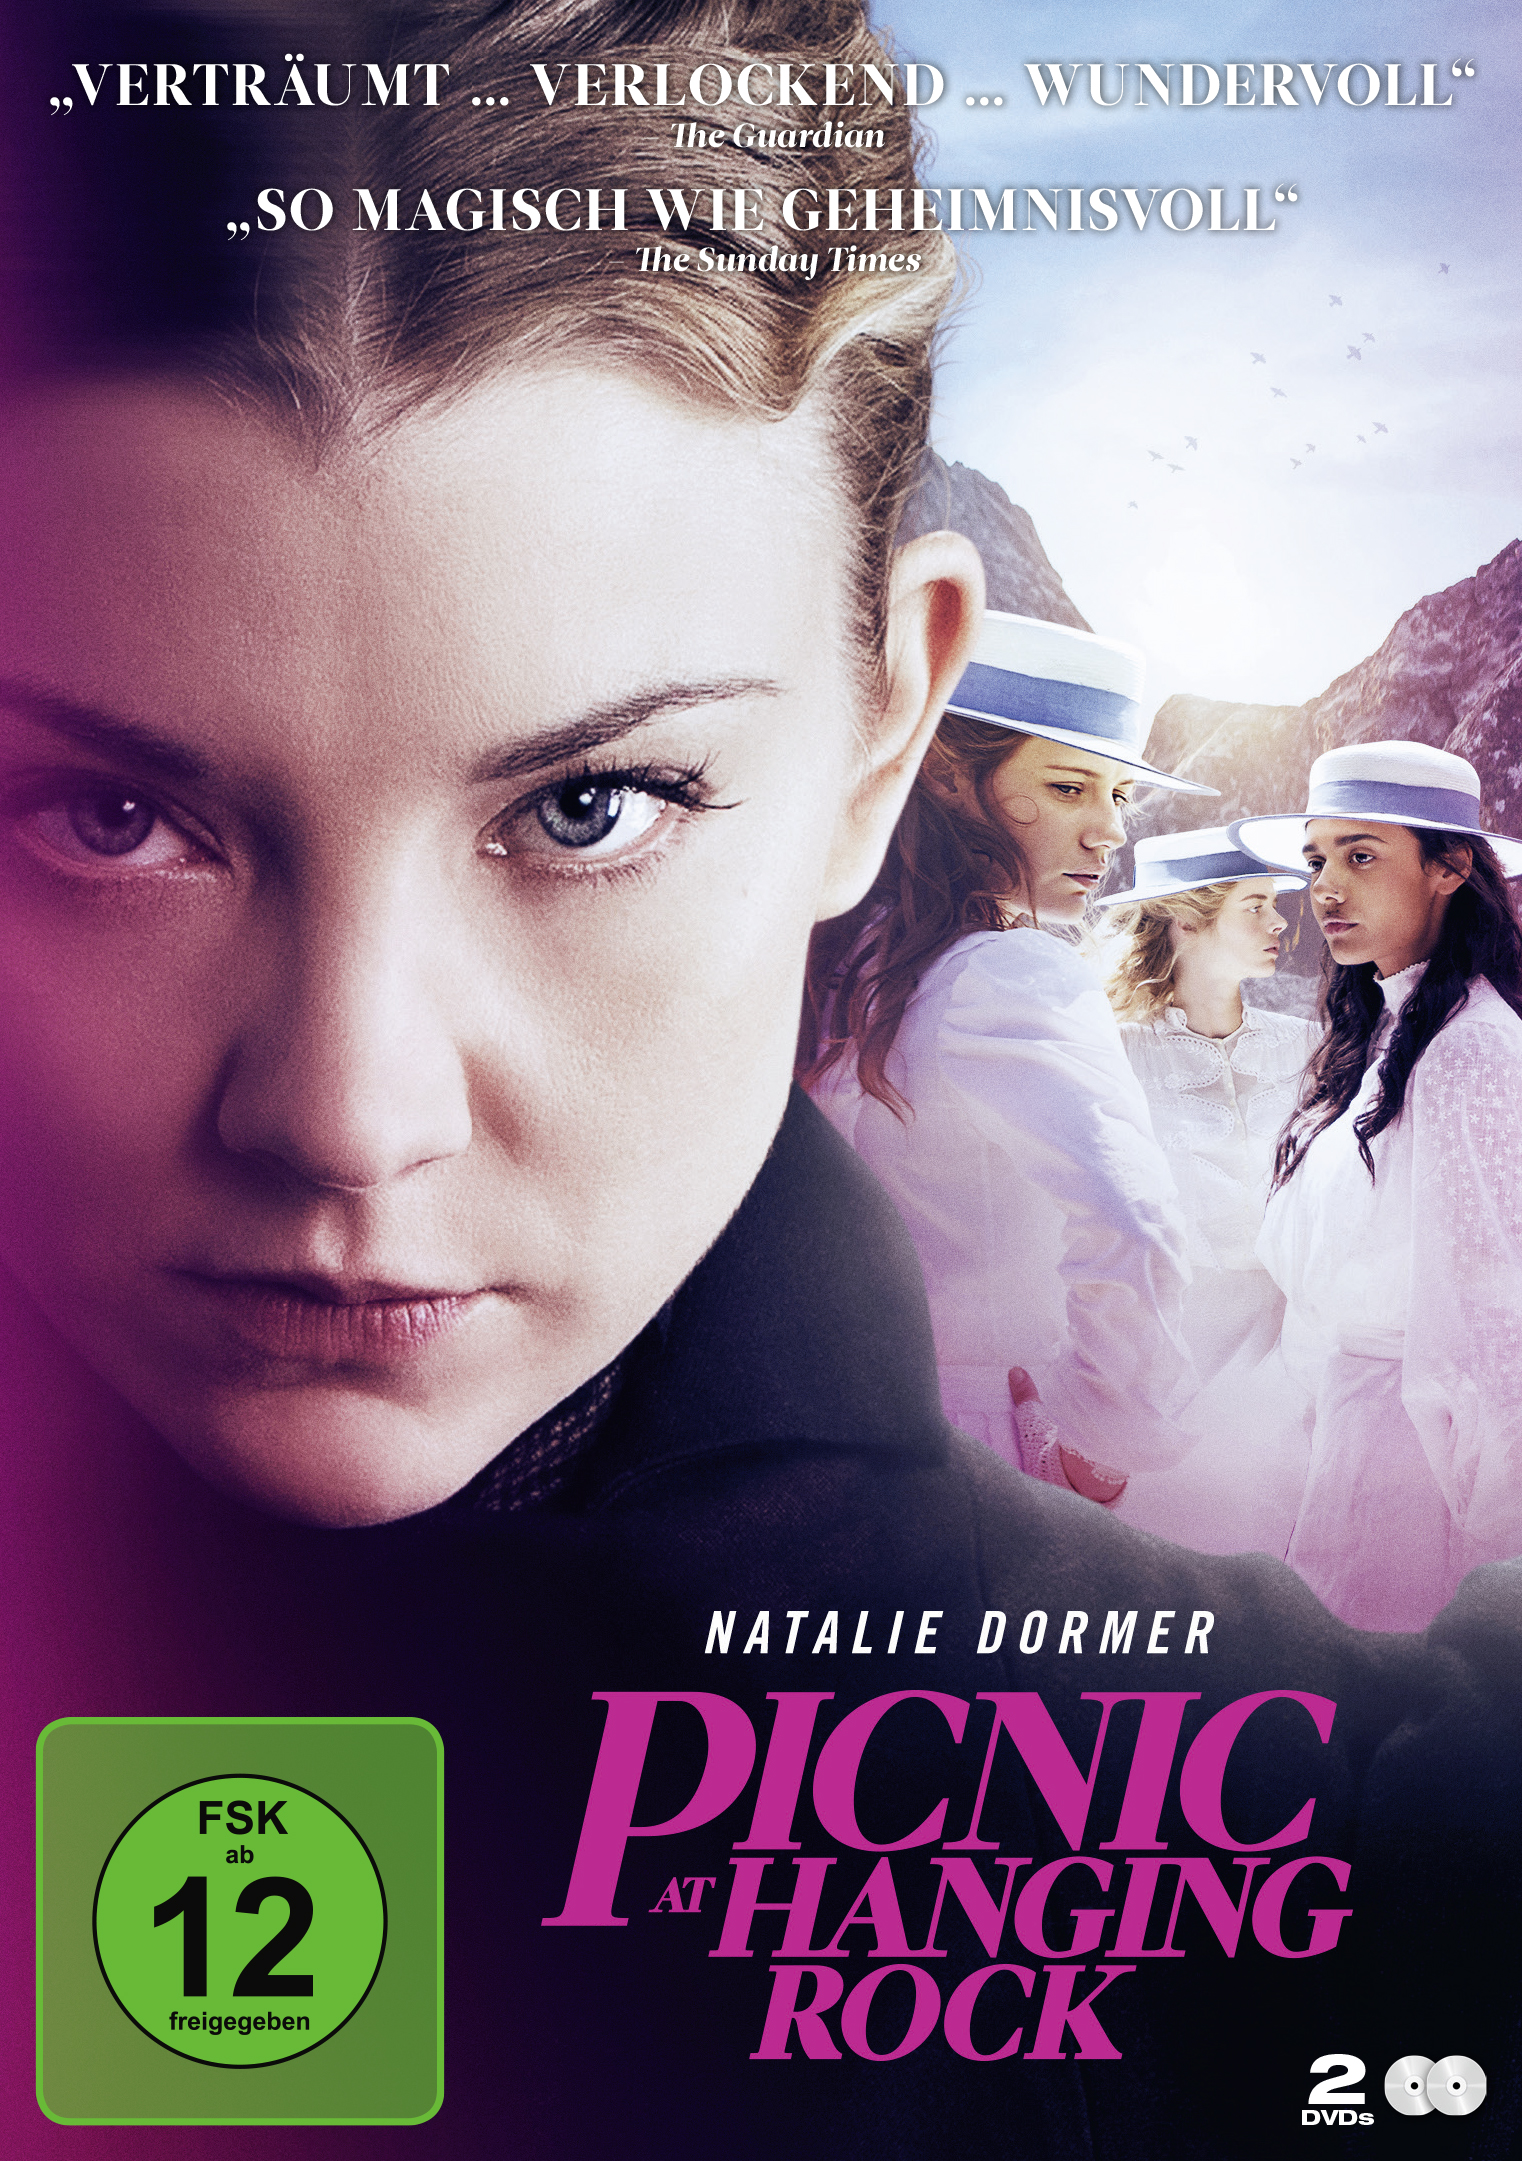 Picnic at Hanging DVD Rock